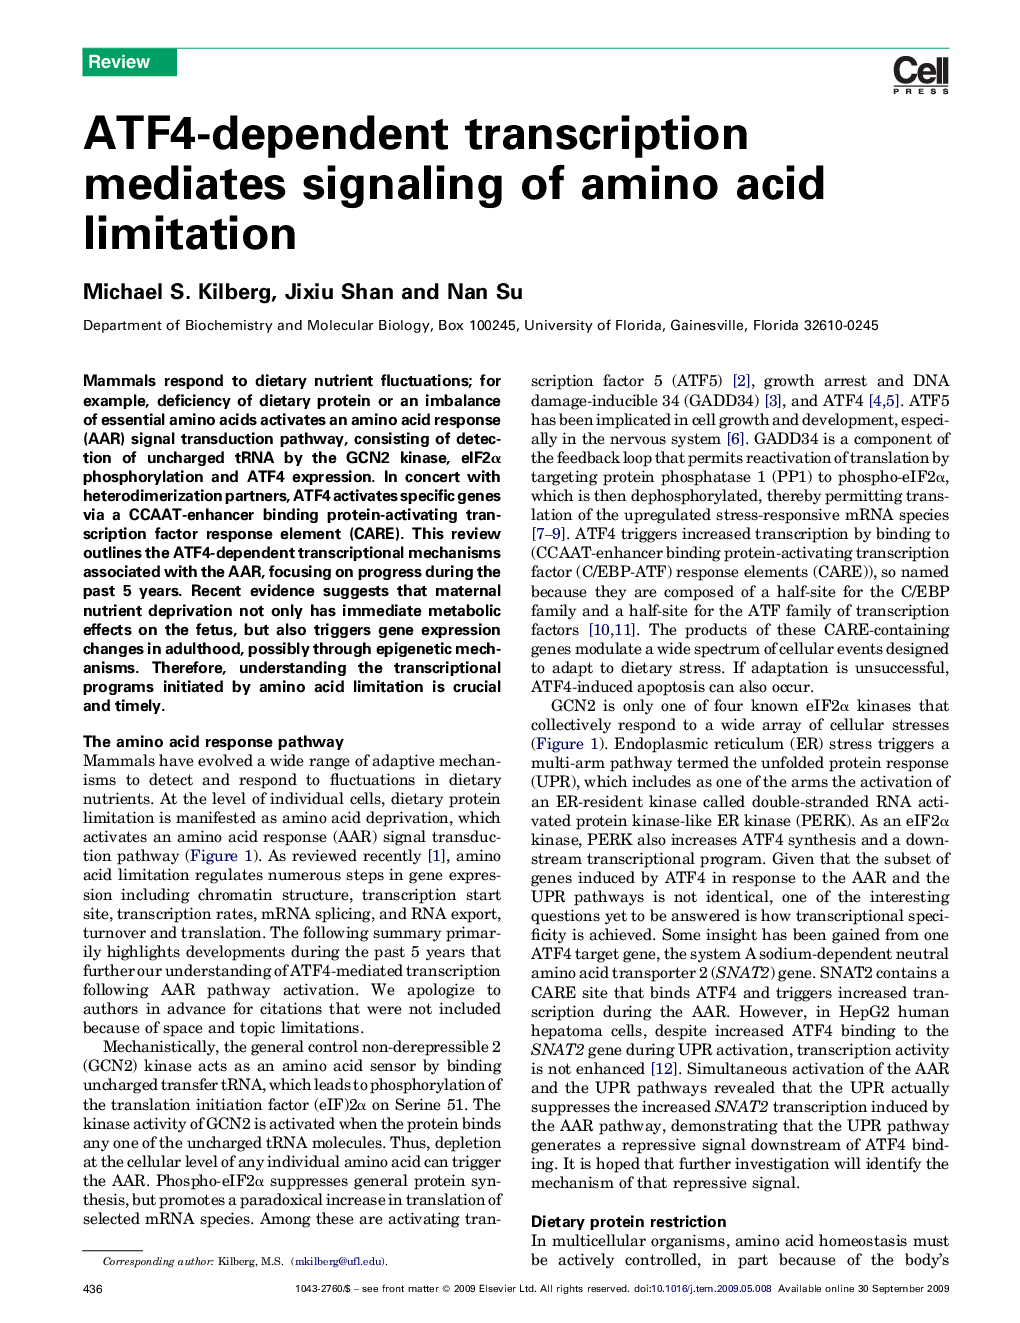 ATF4-dependent transcription mediates signaling of amino acid limitation